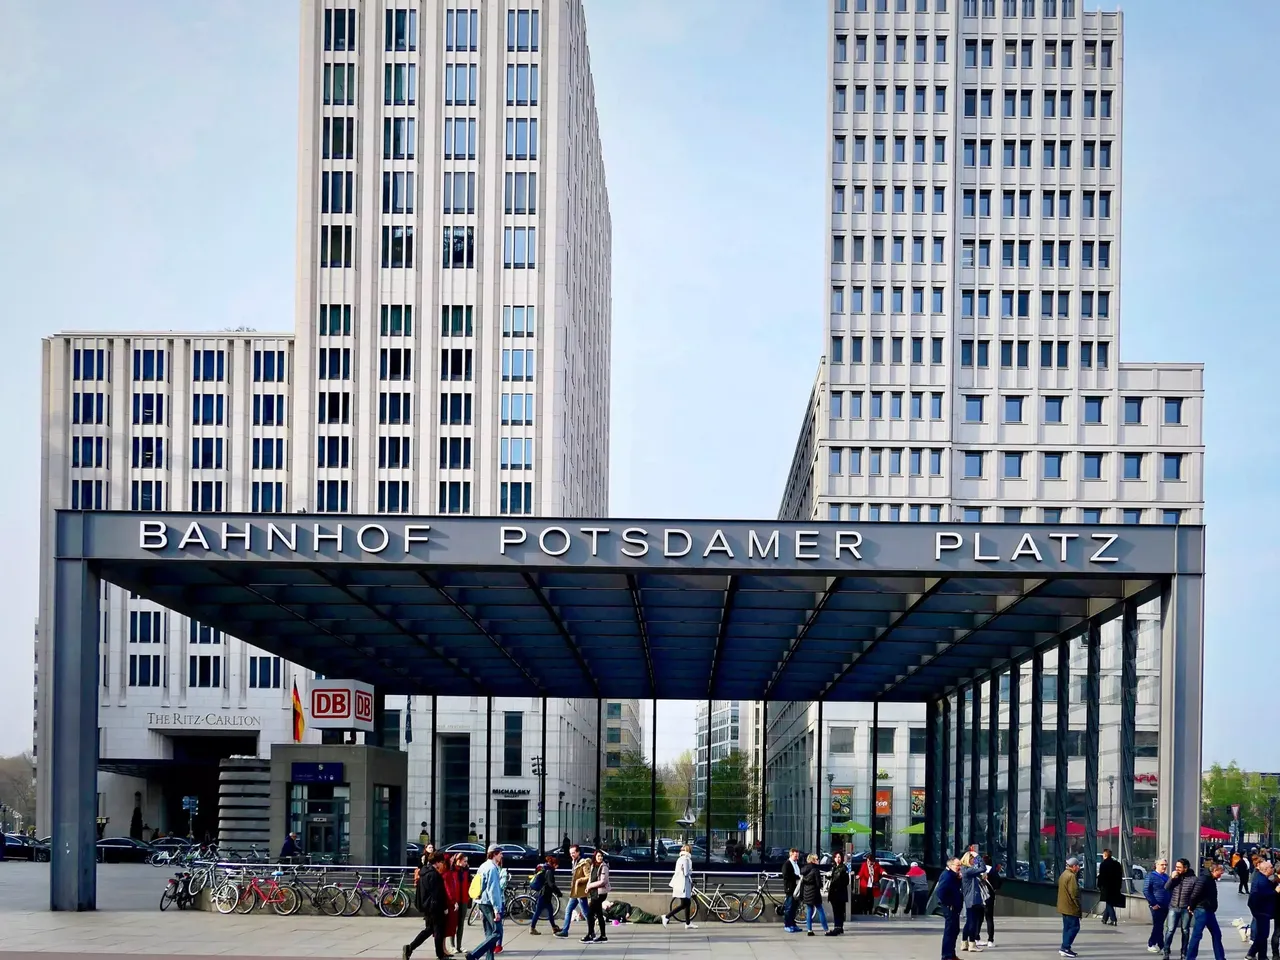 Außenansicht: Es wird die Fassade der hausInvest Immobilie P5 in Berlin abgebildet